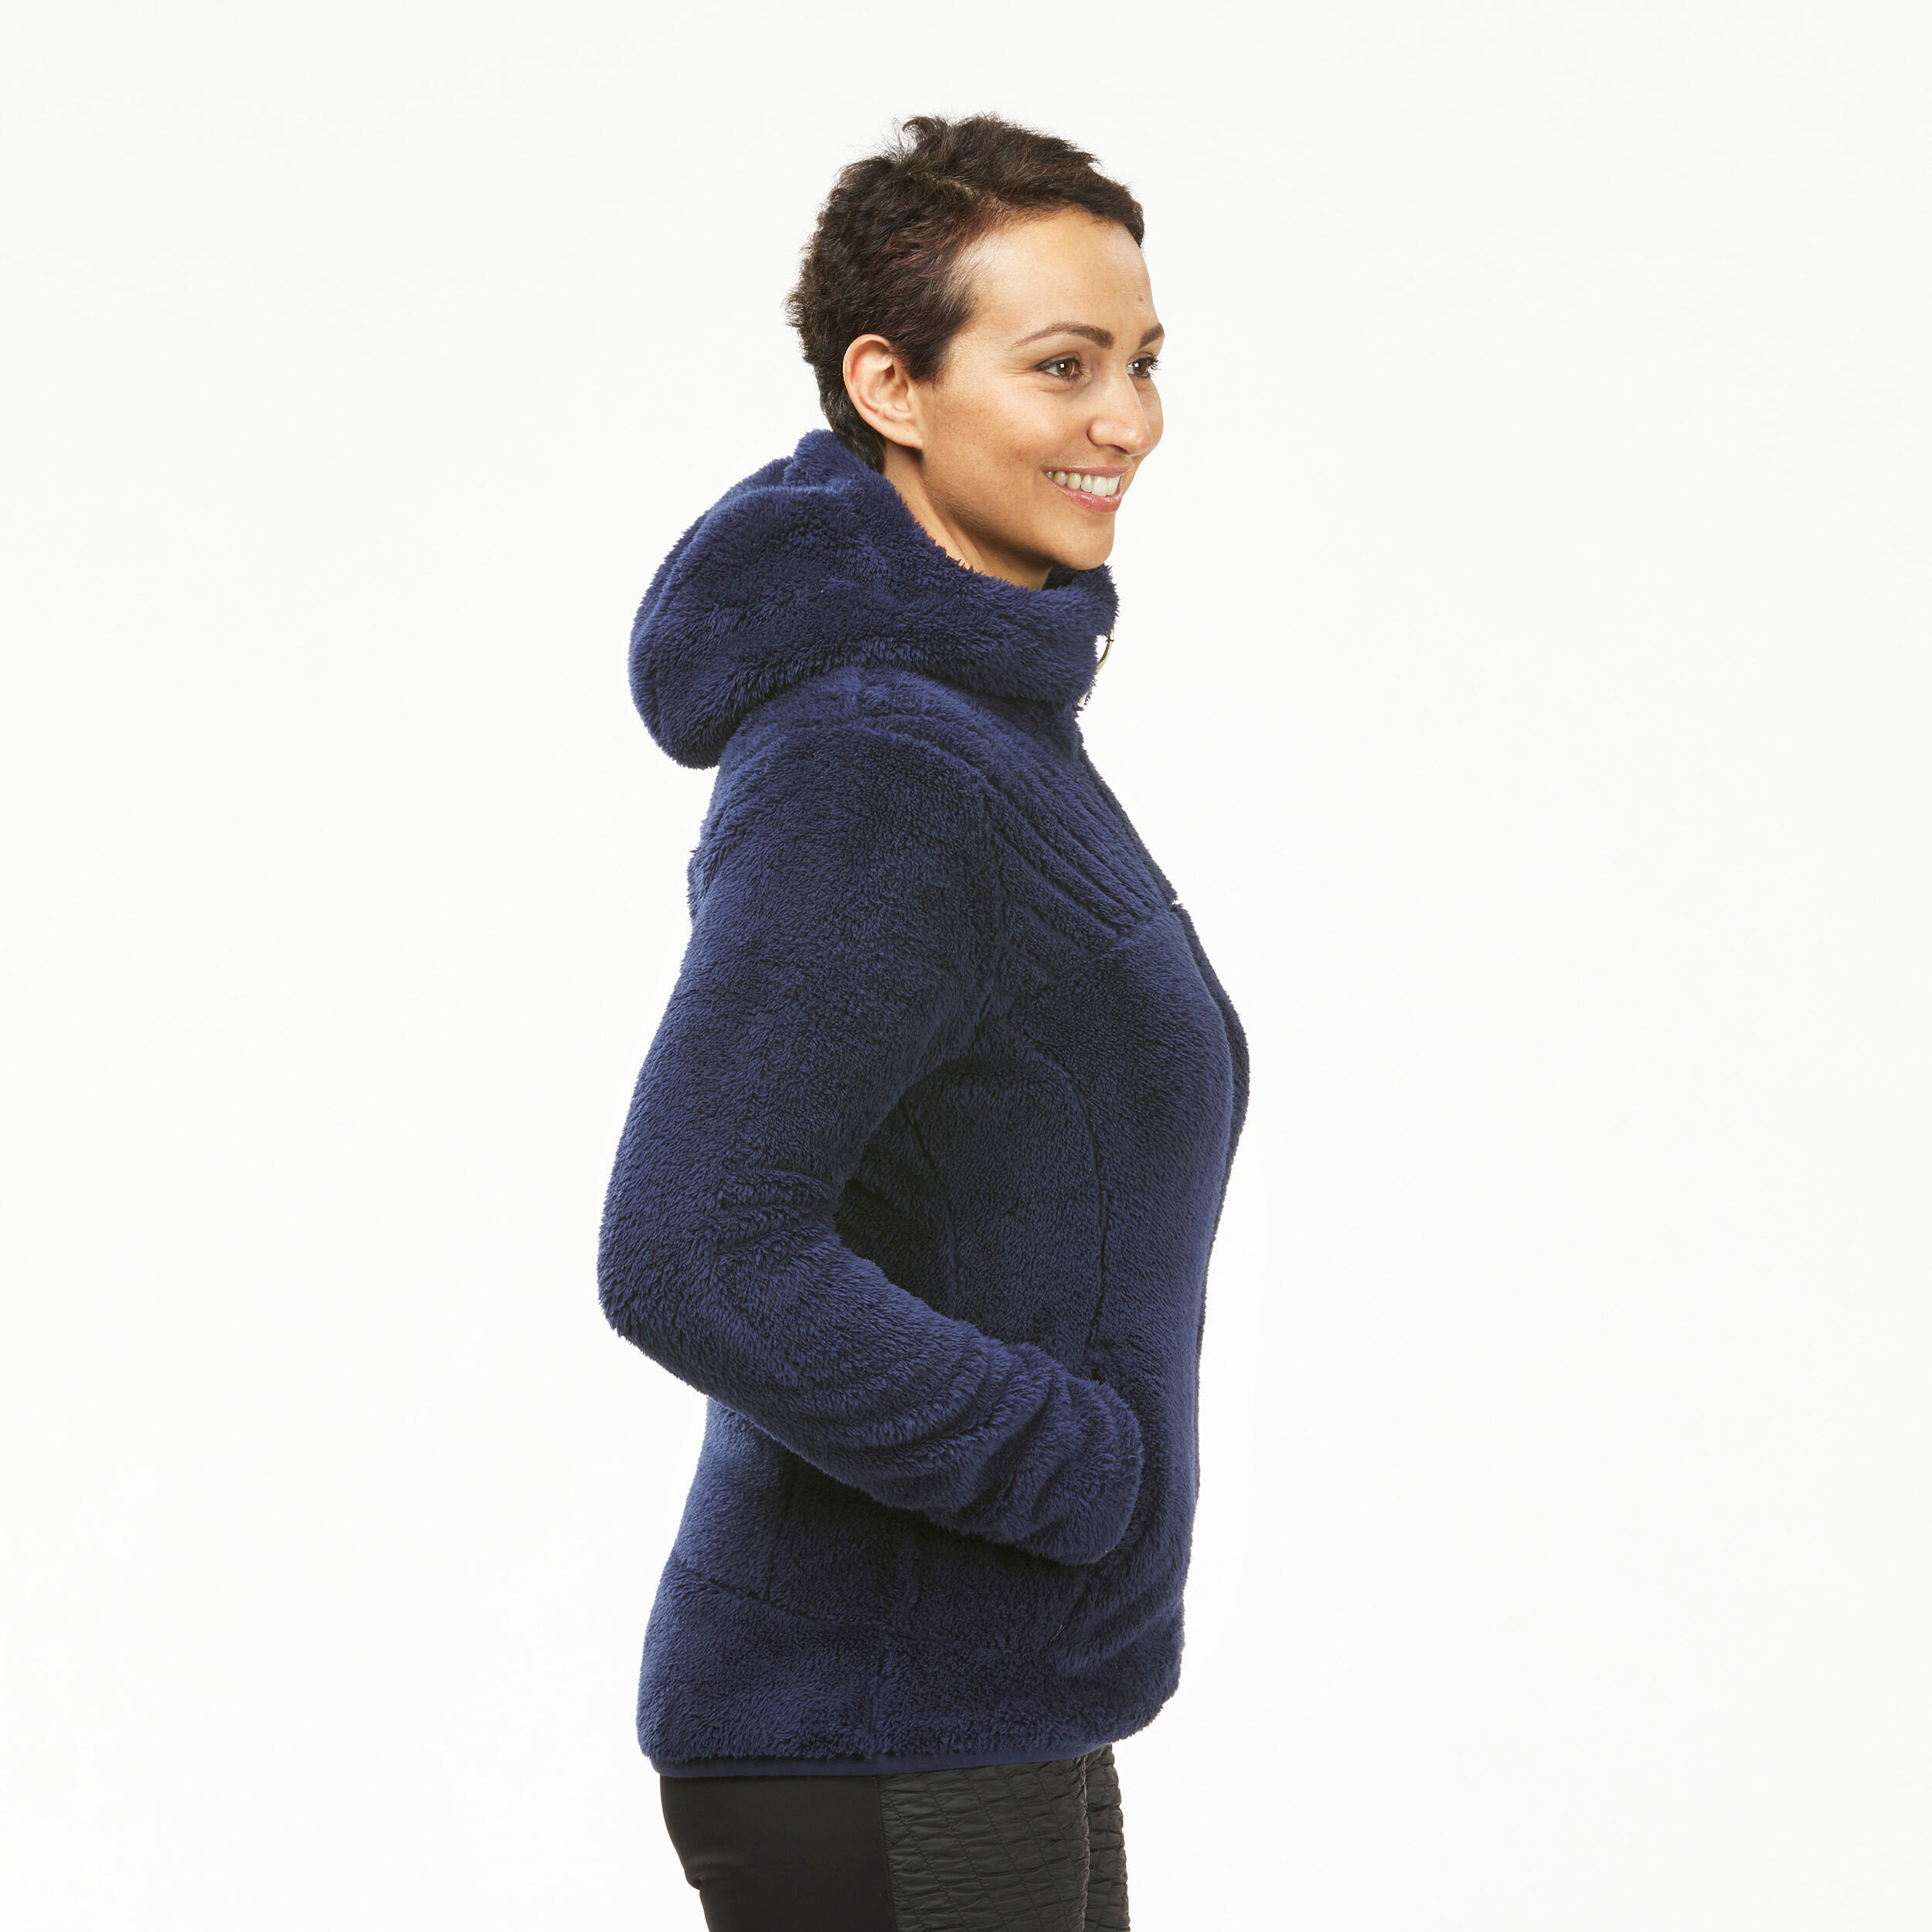 Manteau en laine polaire femme – SH 500 bleu - QUECHUA